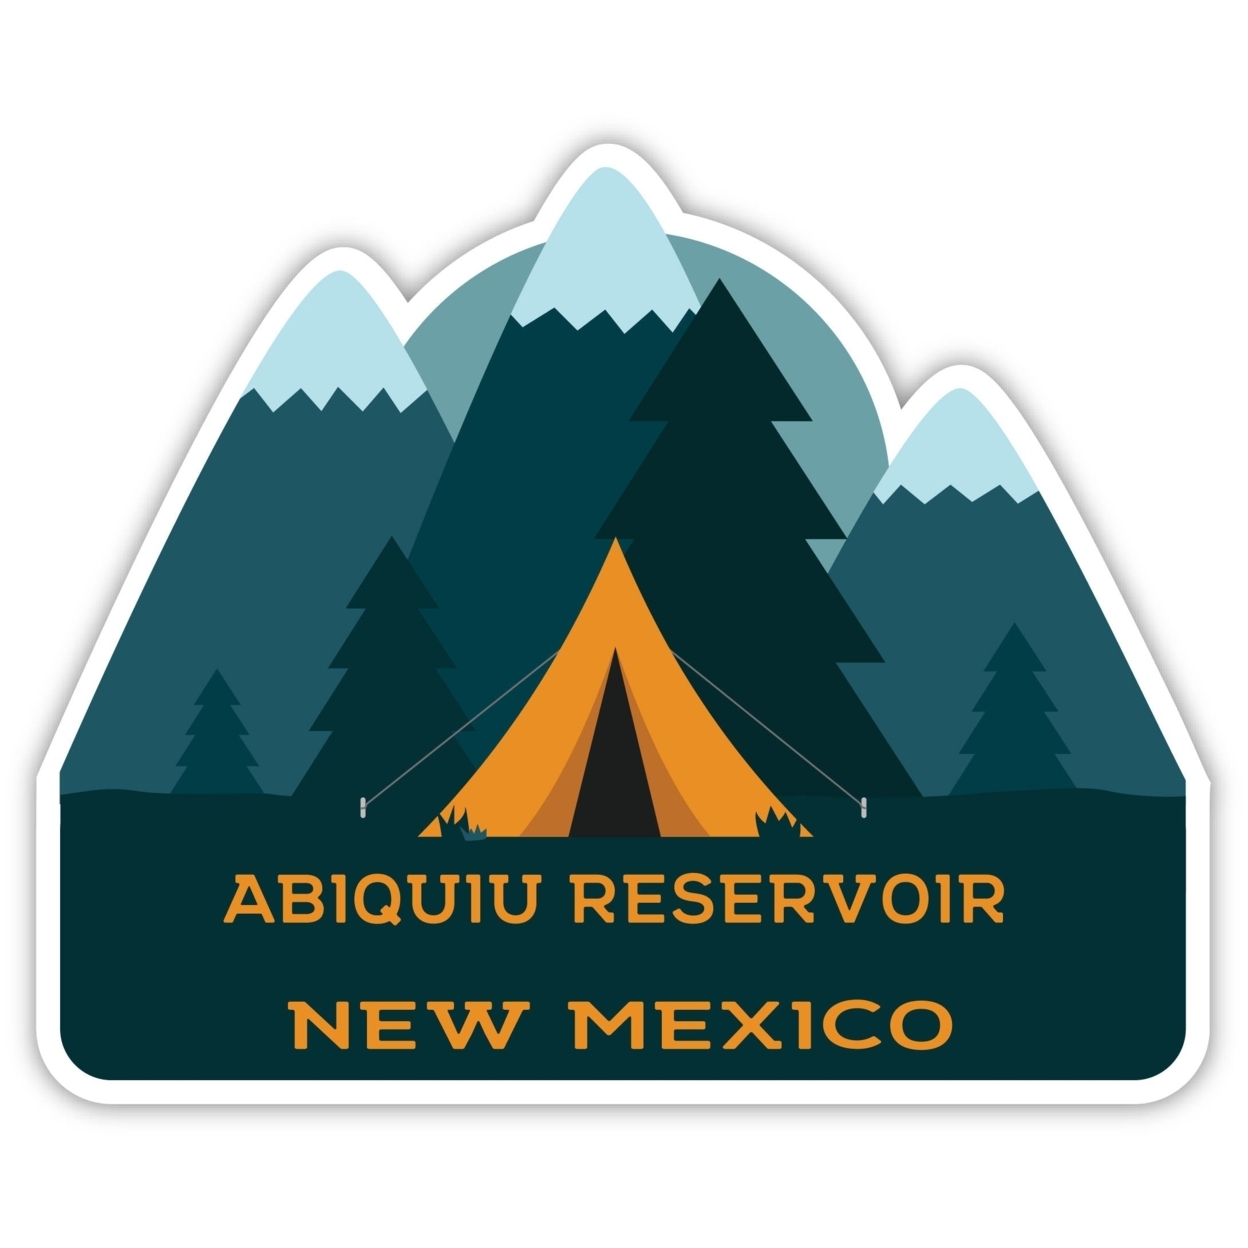 Abiquiu Reservoir New Mexico Souvenir Decorative Stickers (Choose Theme And Size) - Single Unit, 4-Inch, Tent